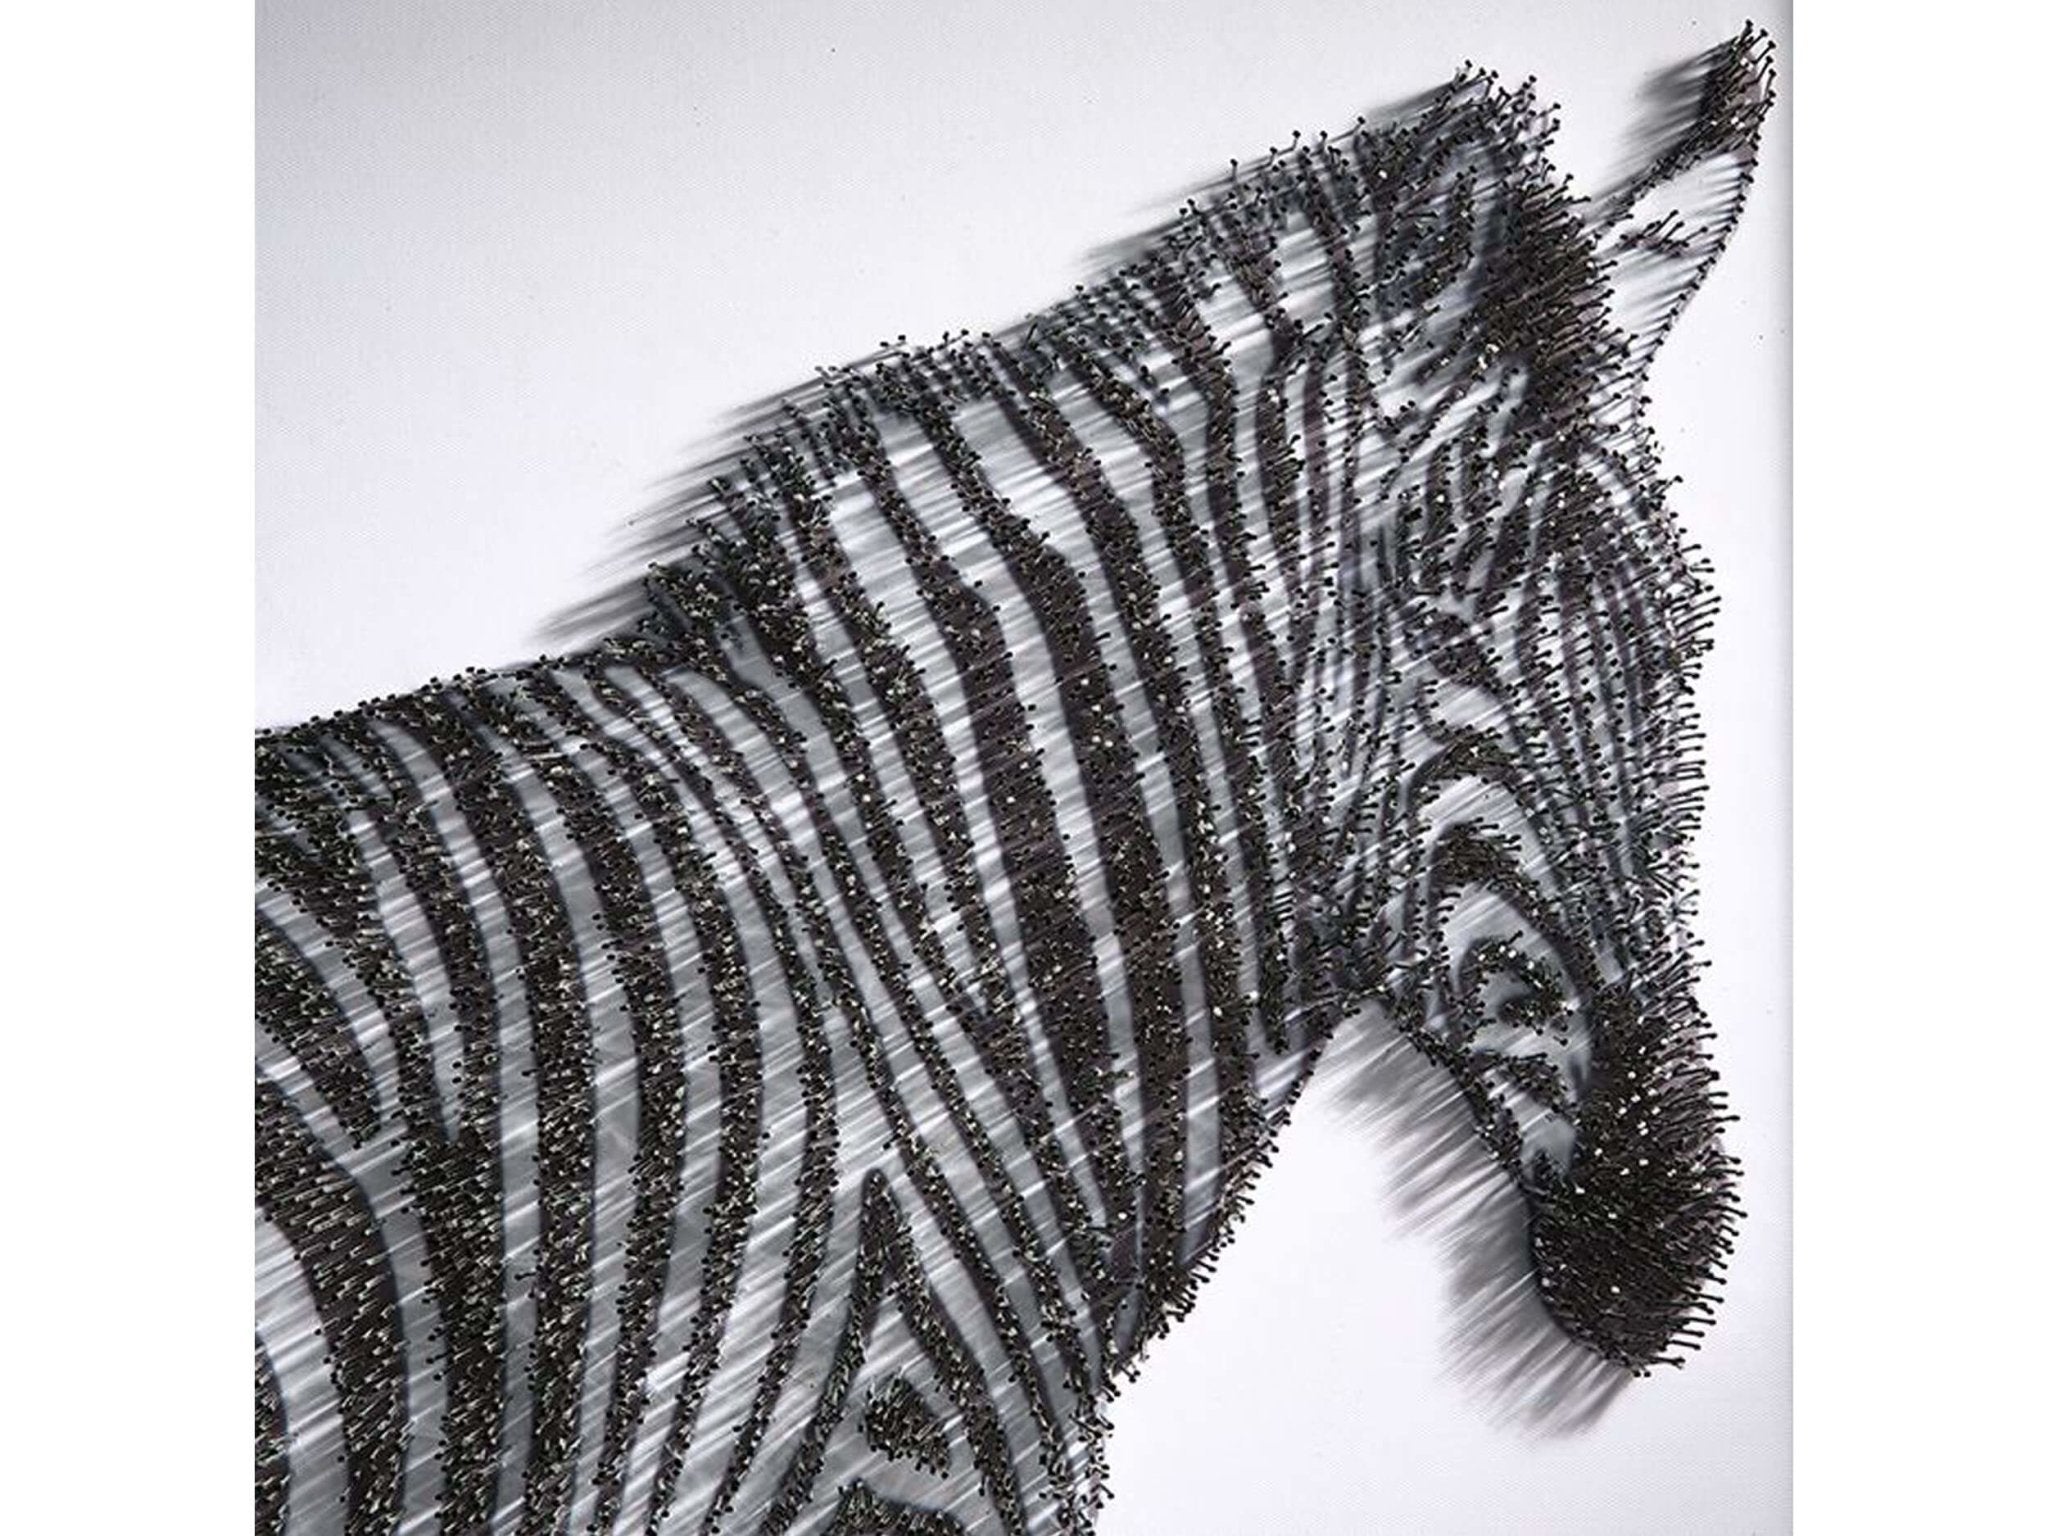 Handwerk nagel kunst afbeelding zebra